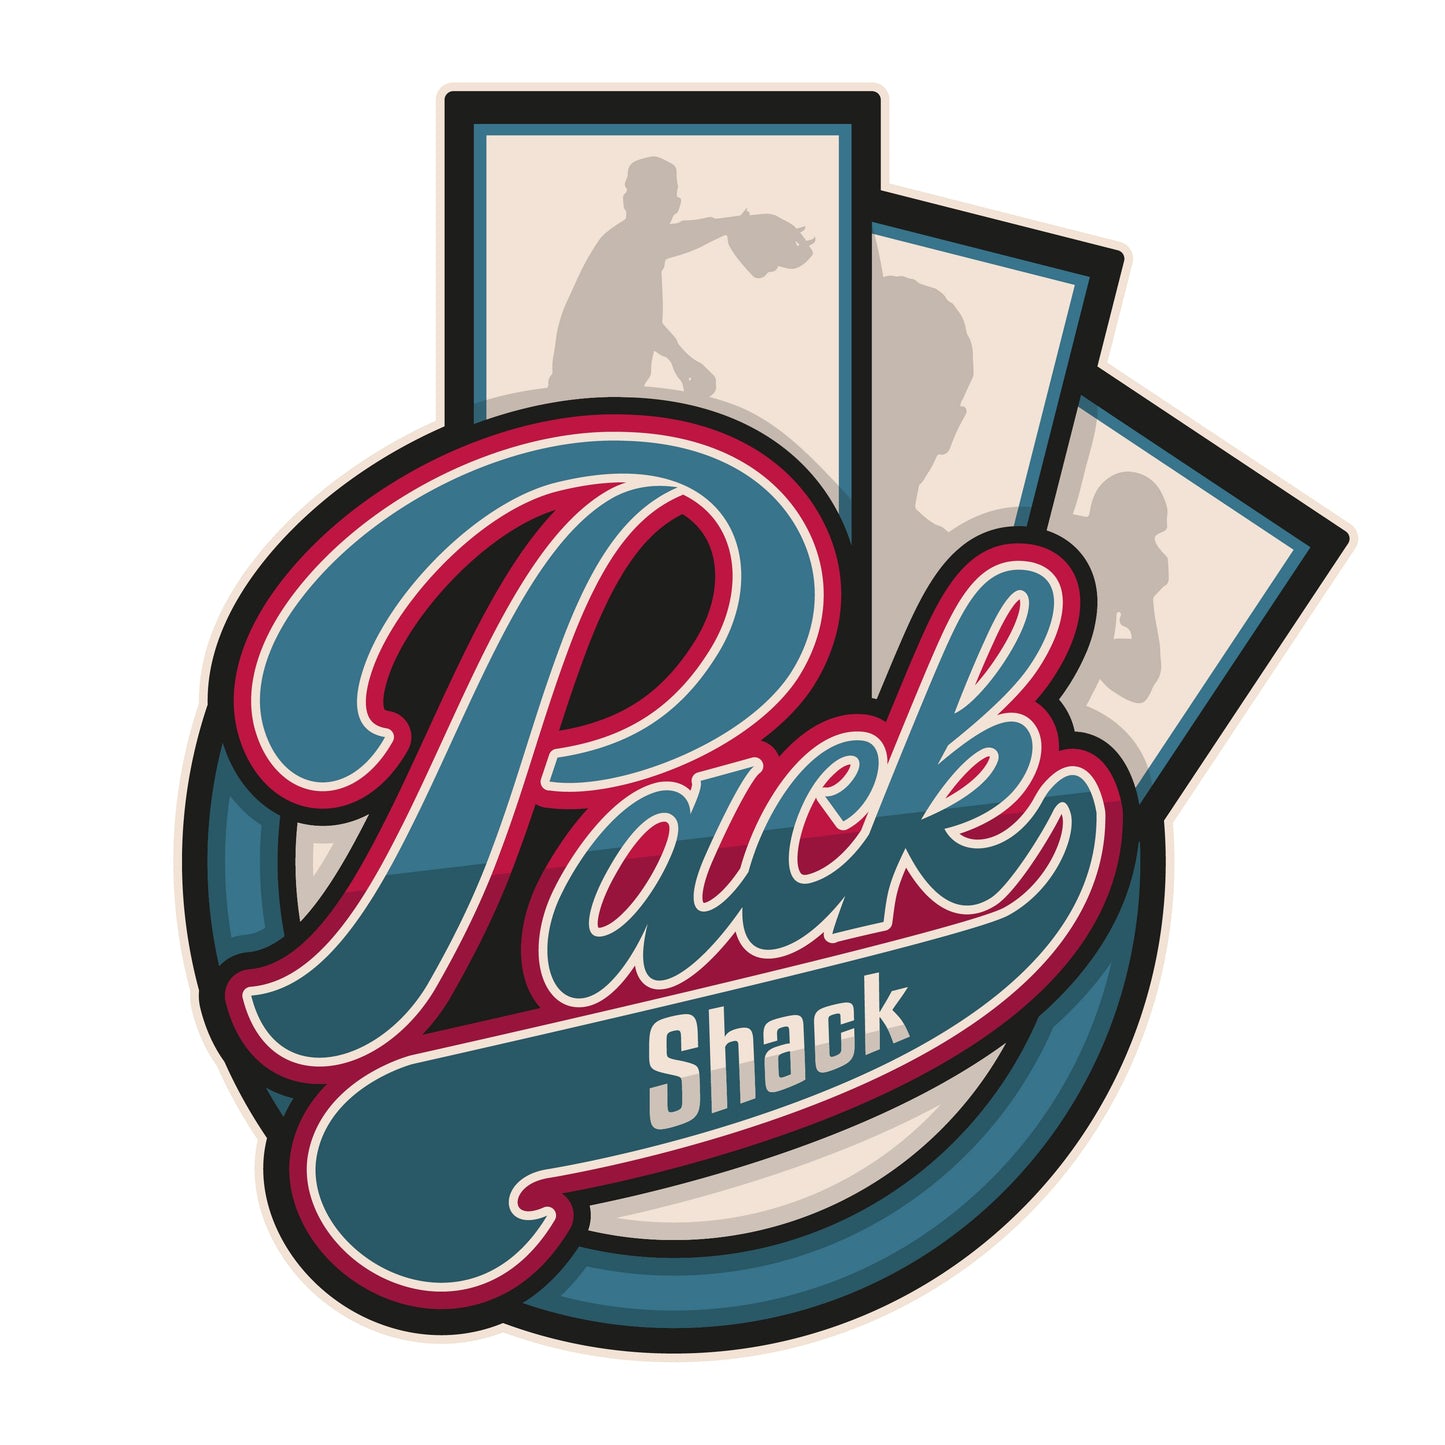 Pack Shack Sticker 3pk - Merch